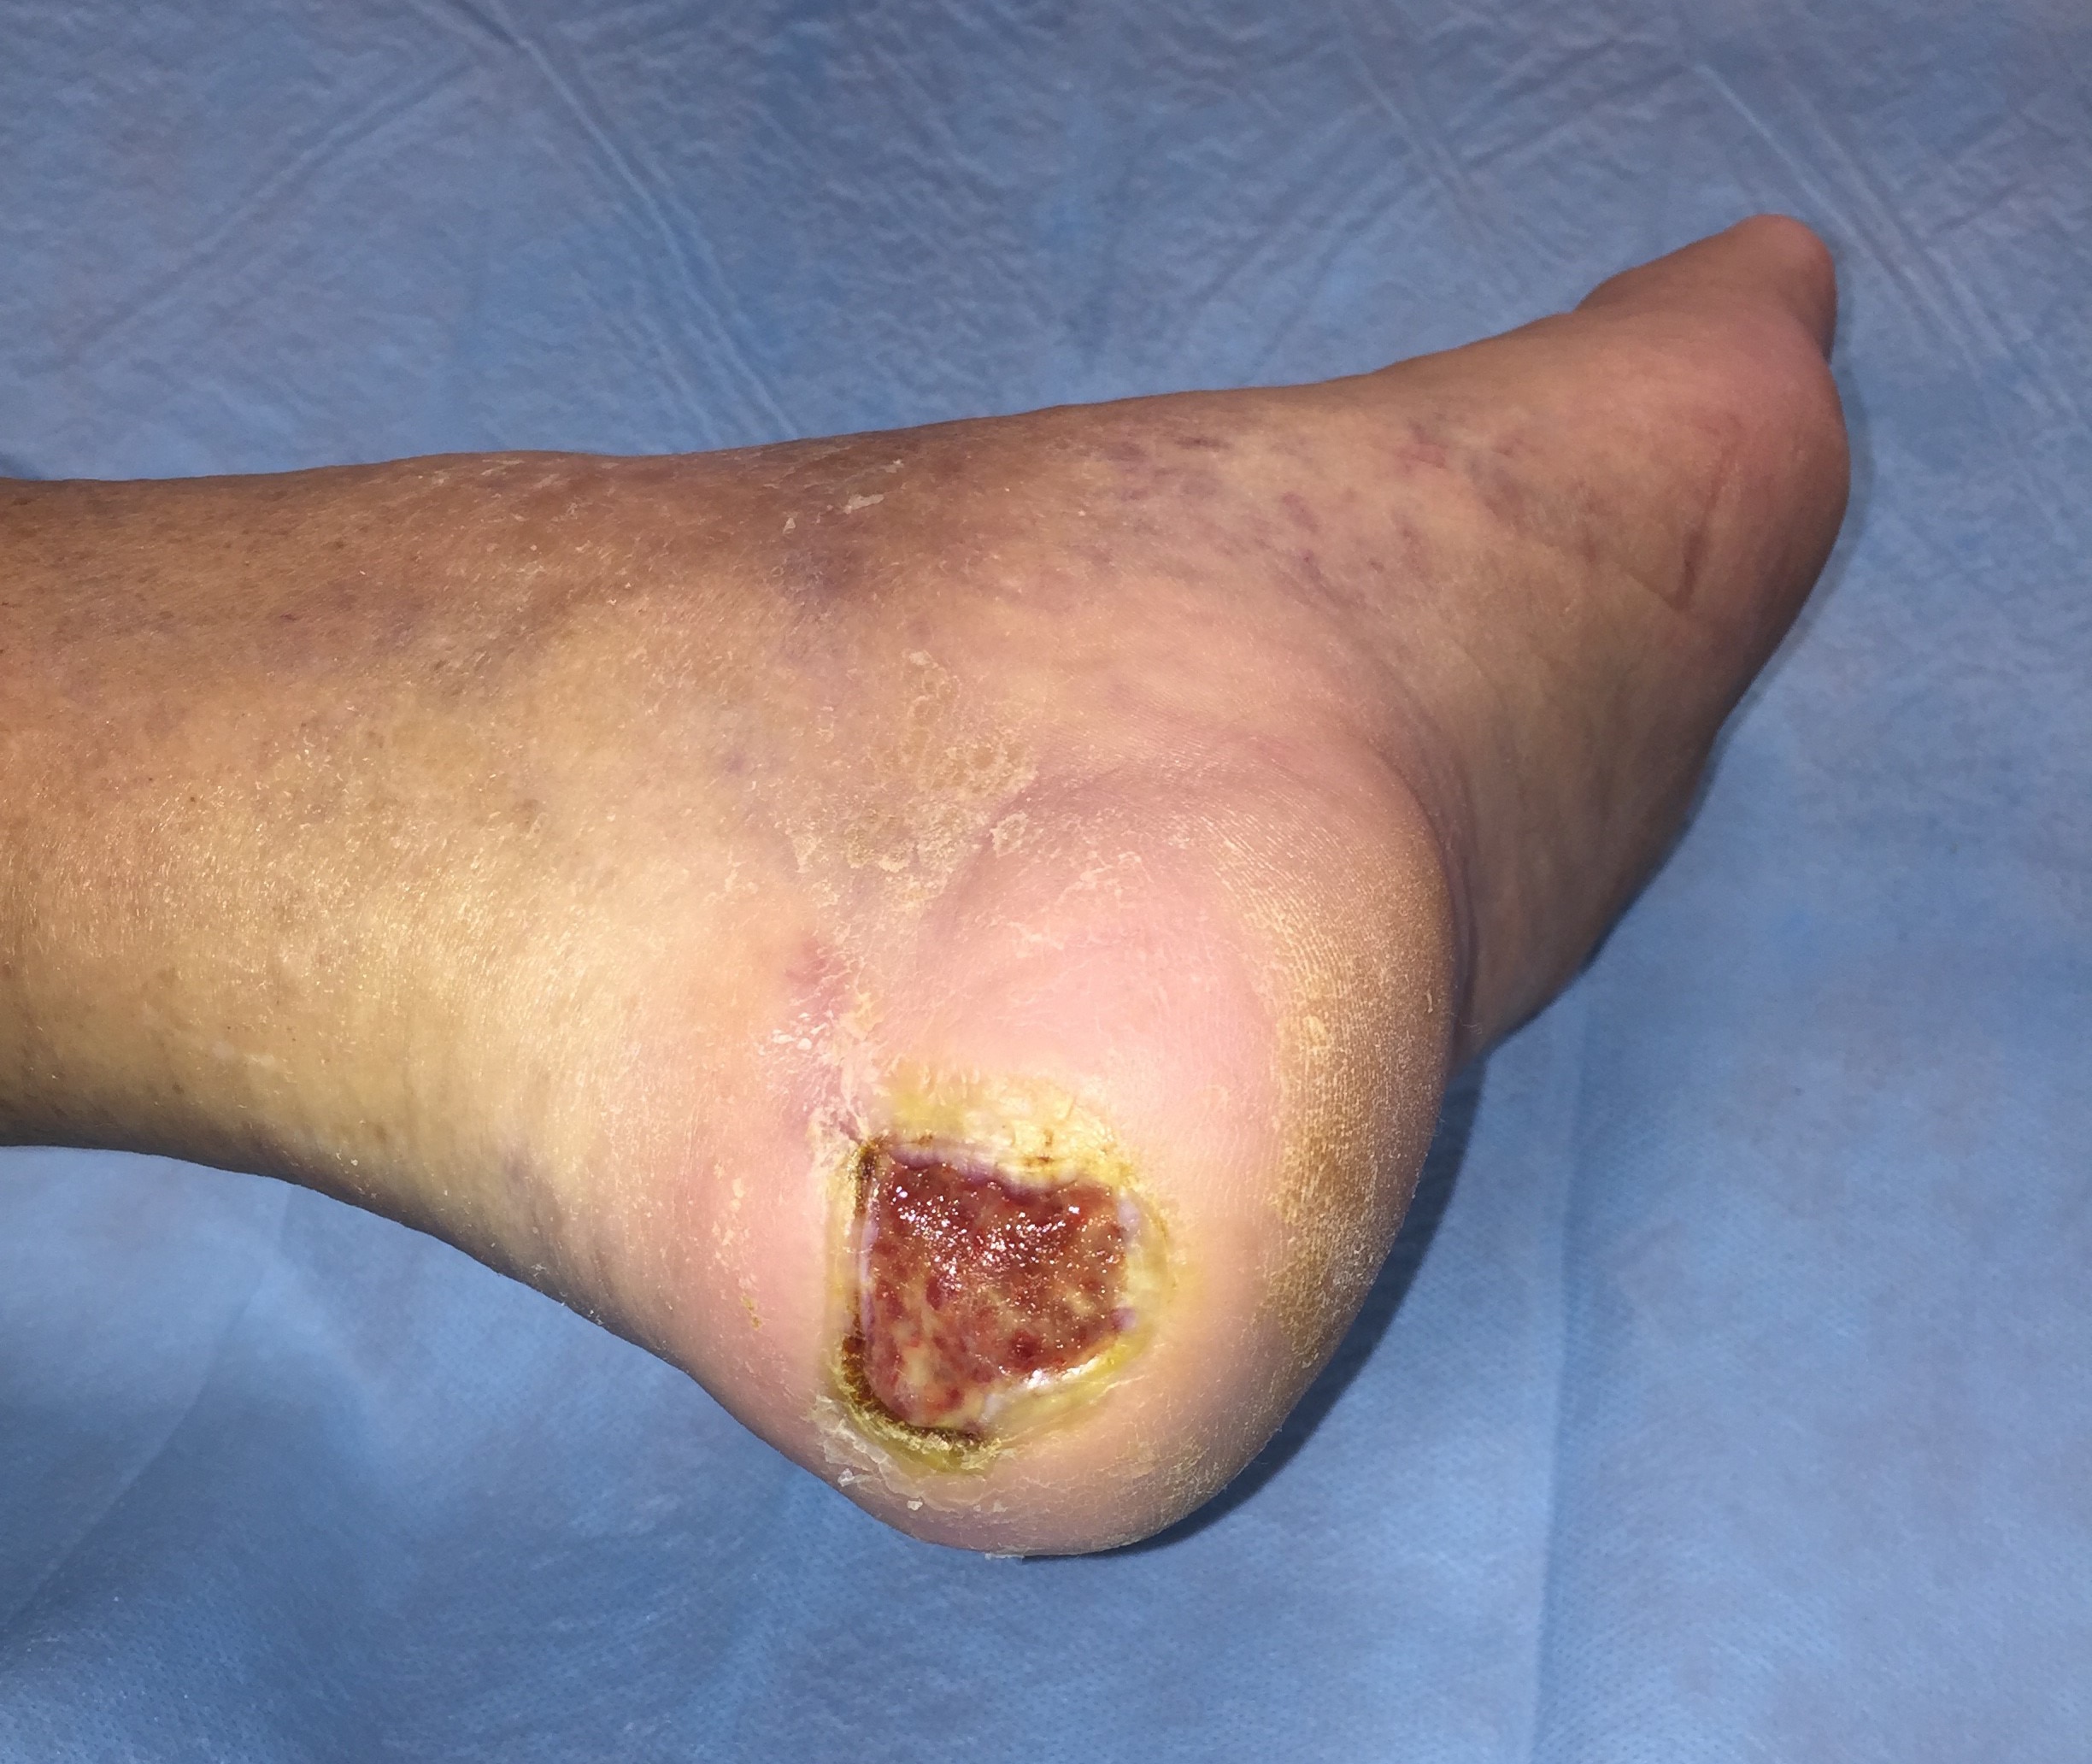 Tratamiento de úlcera de pie diabético levemente infectada en el talón